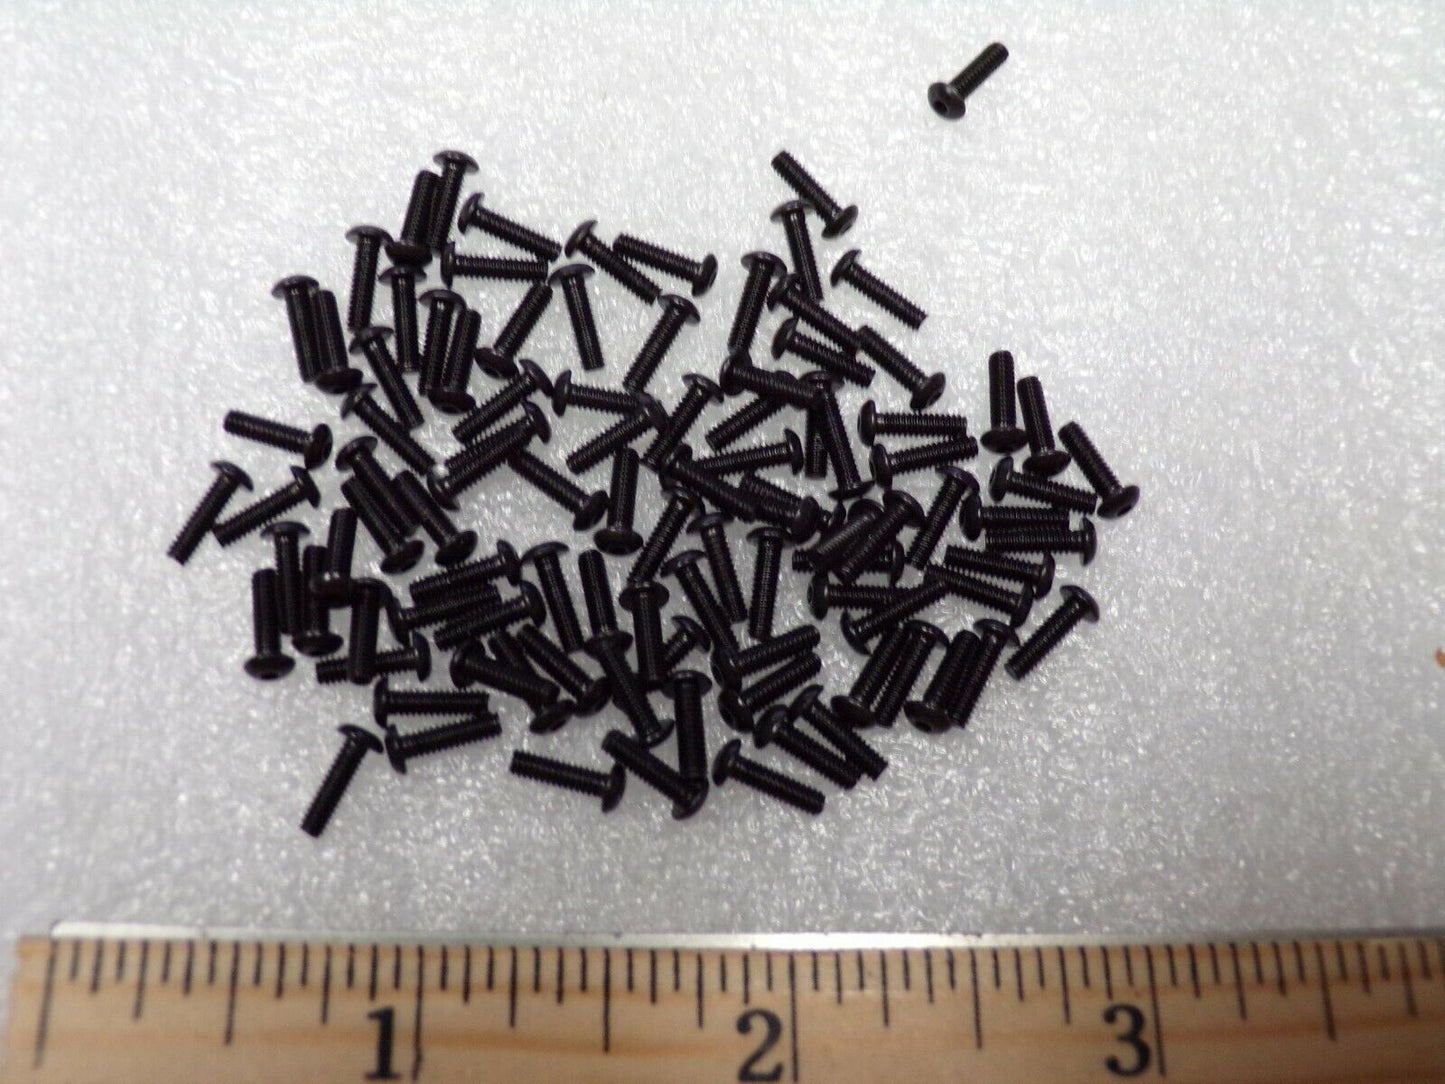 FABORY #2-56 x 5/16" Black Oxide, Steel Button Socket 100PK (183862945467-NBT30)